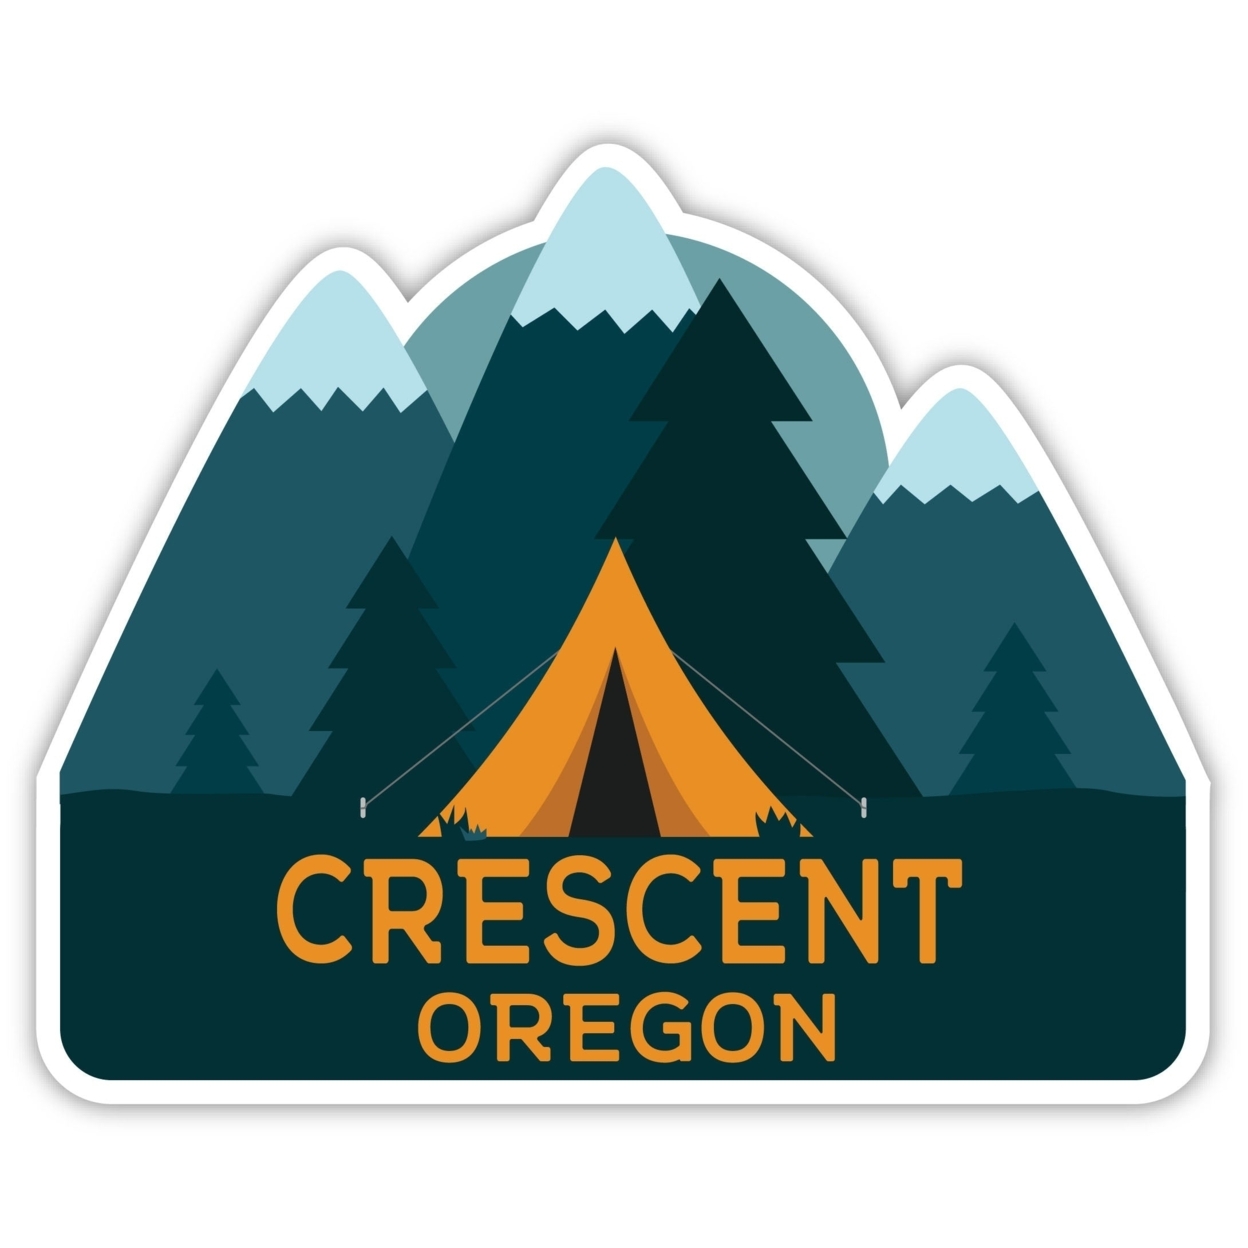 Crescent Oregon Souvenir Decorative Stickers (Choose Theme And Size) - Single Unit, 4-Inch, Tent